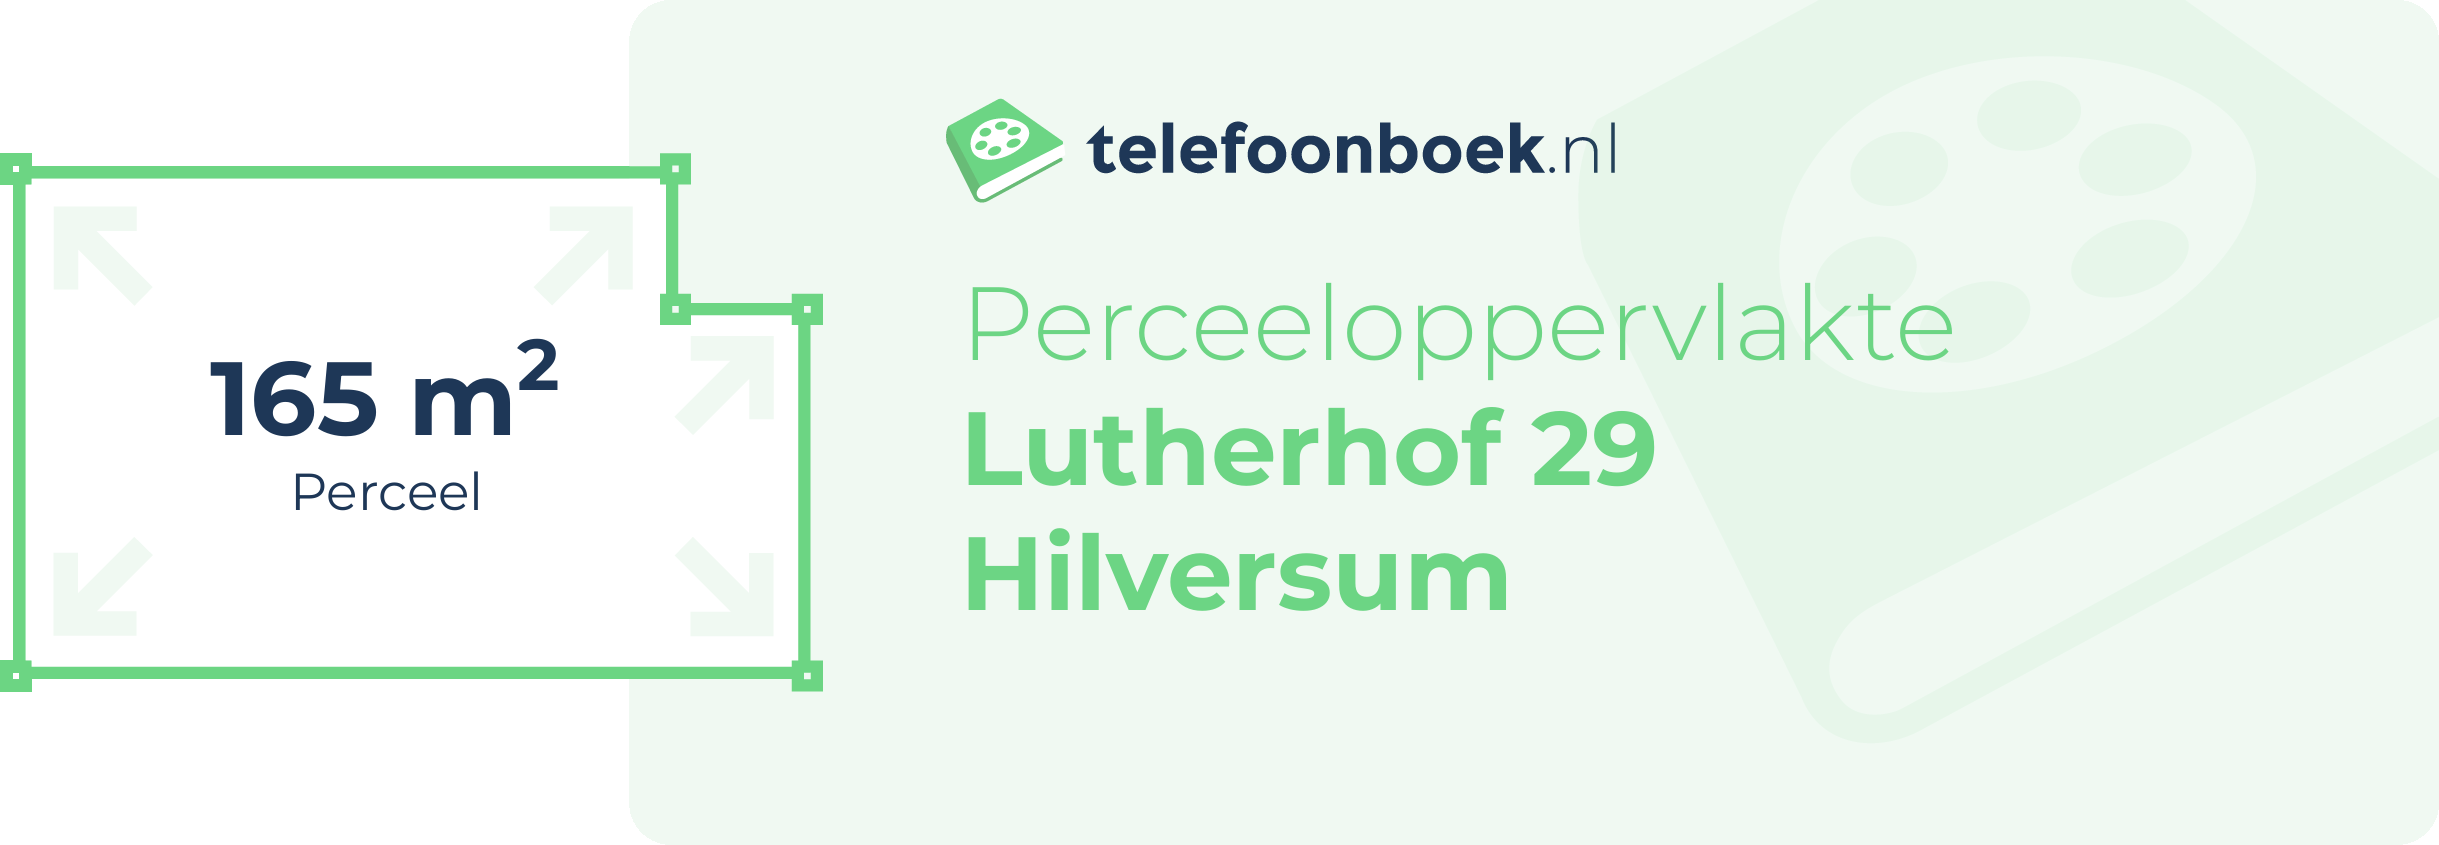 Perceeloppervlakte Lutherhof 29 Hilversum